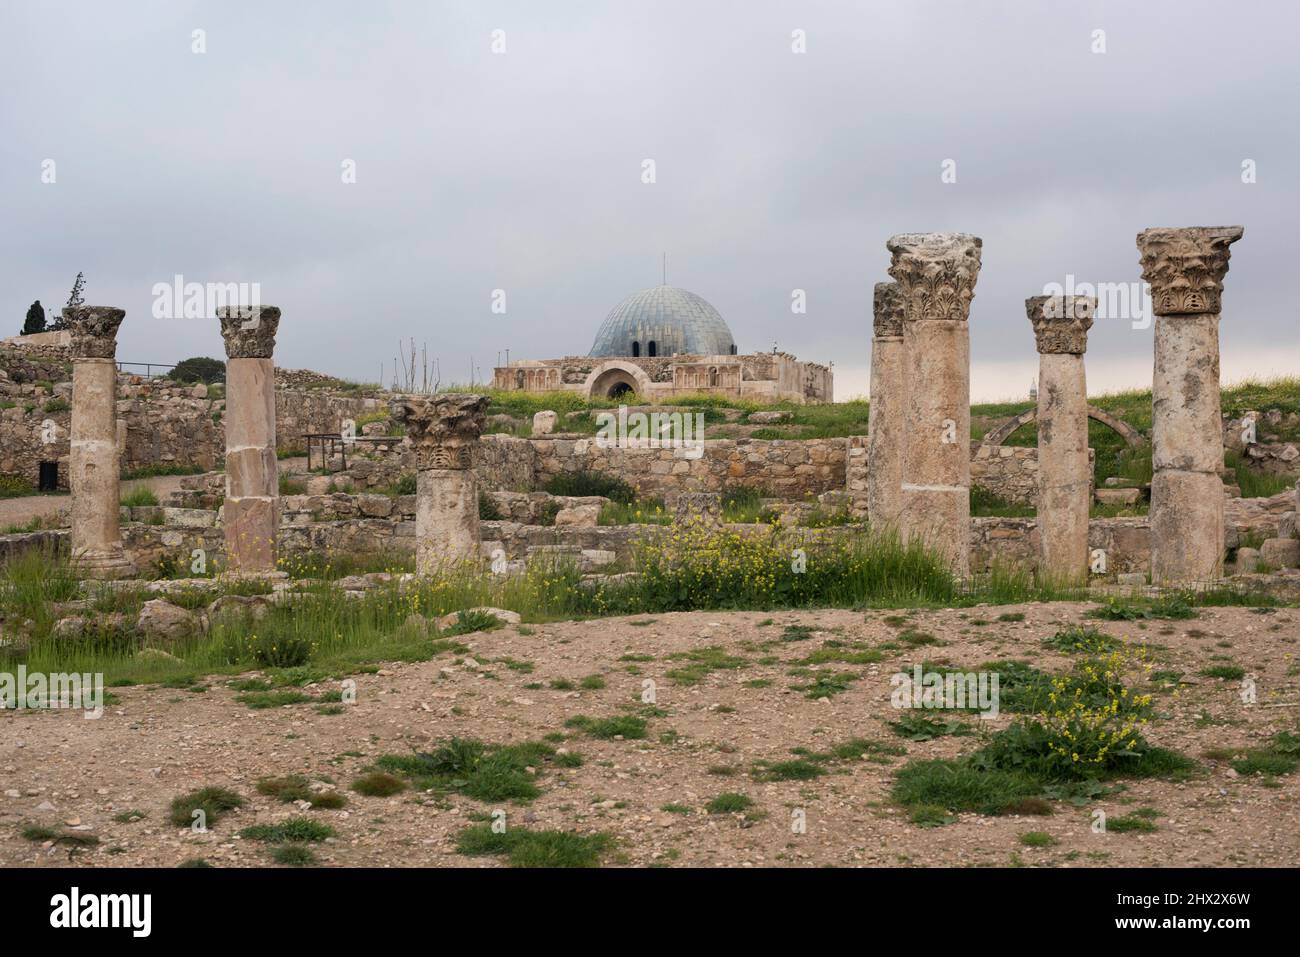 Citadelle d'Amman. Palais Umayyad du 8th siècle (en bas) et colonnes romaines. Jordanie. Banque D'Images